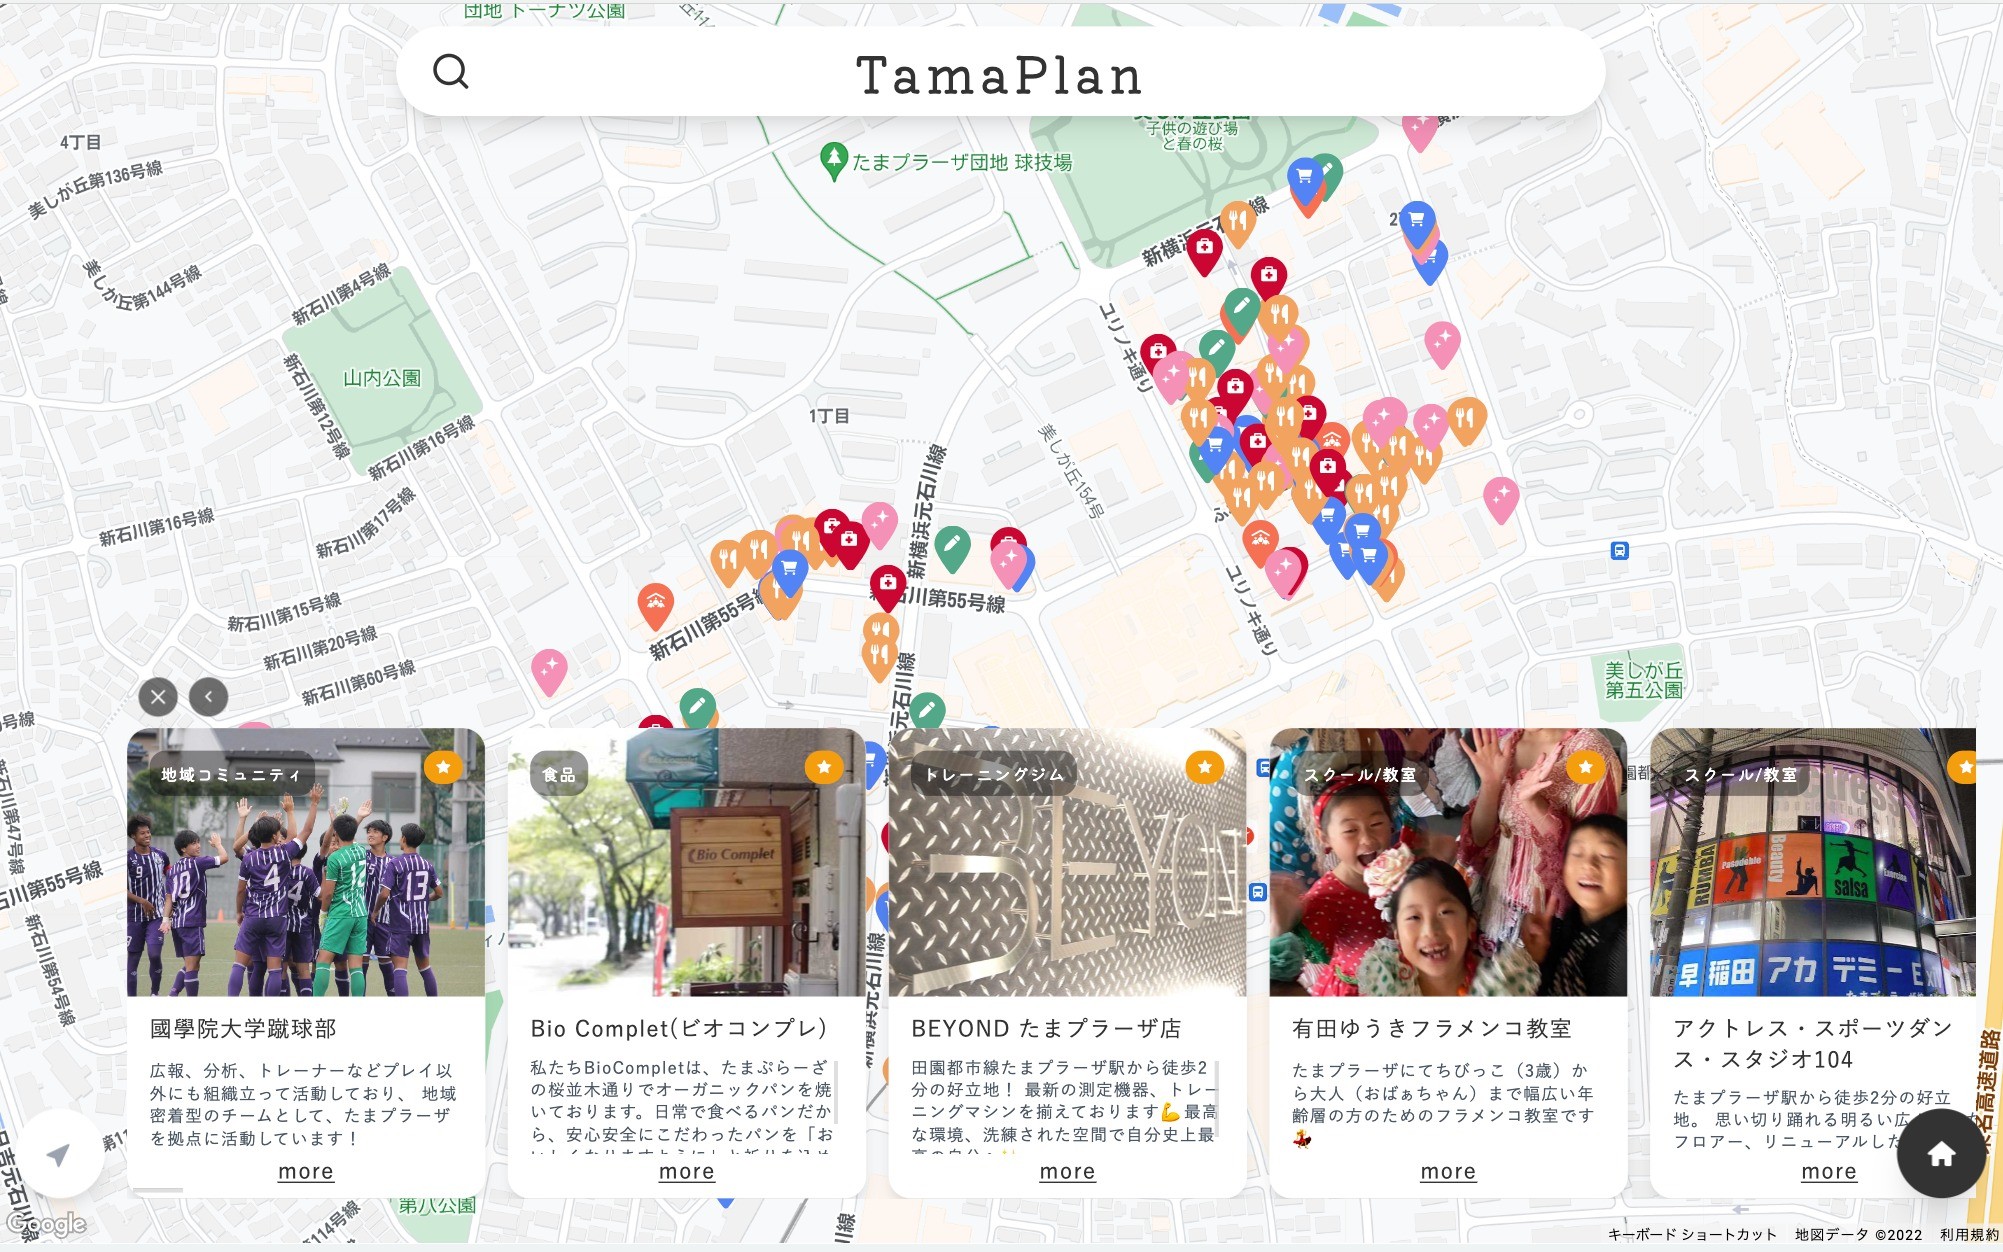 地域情報マッチングwebアプリ「TamaPlan」 | Web制作・ホームページ制作実績 | Web幹事